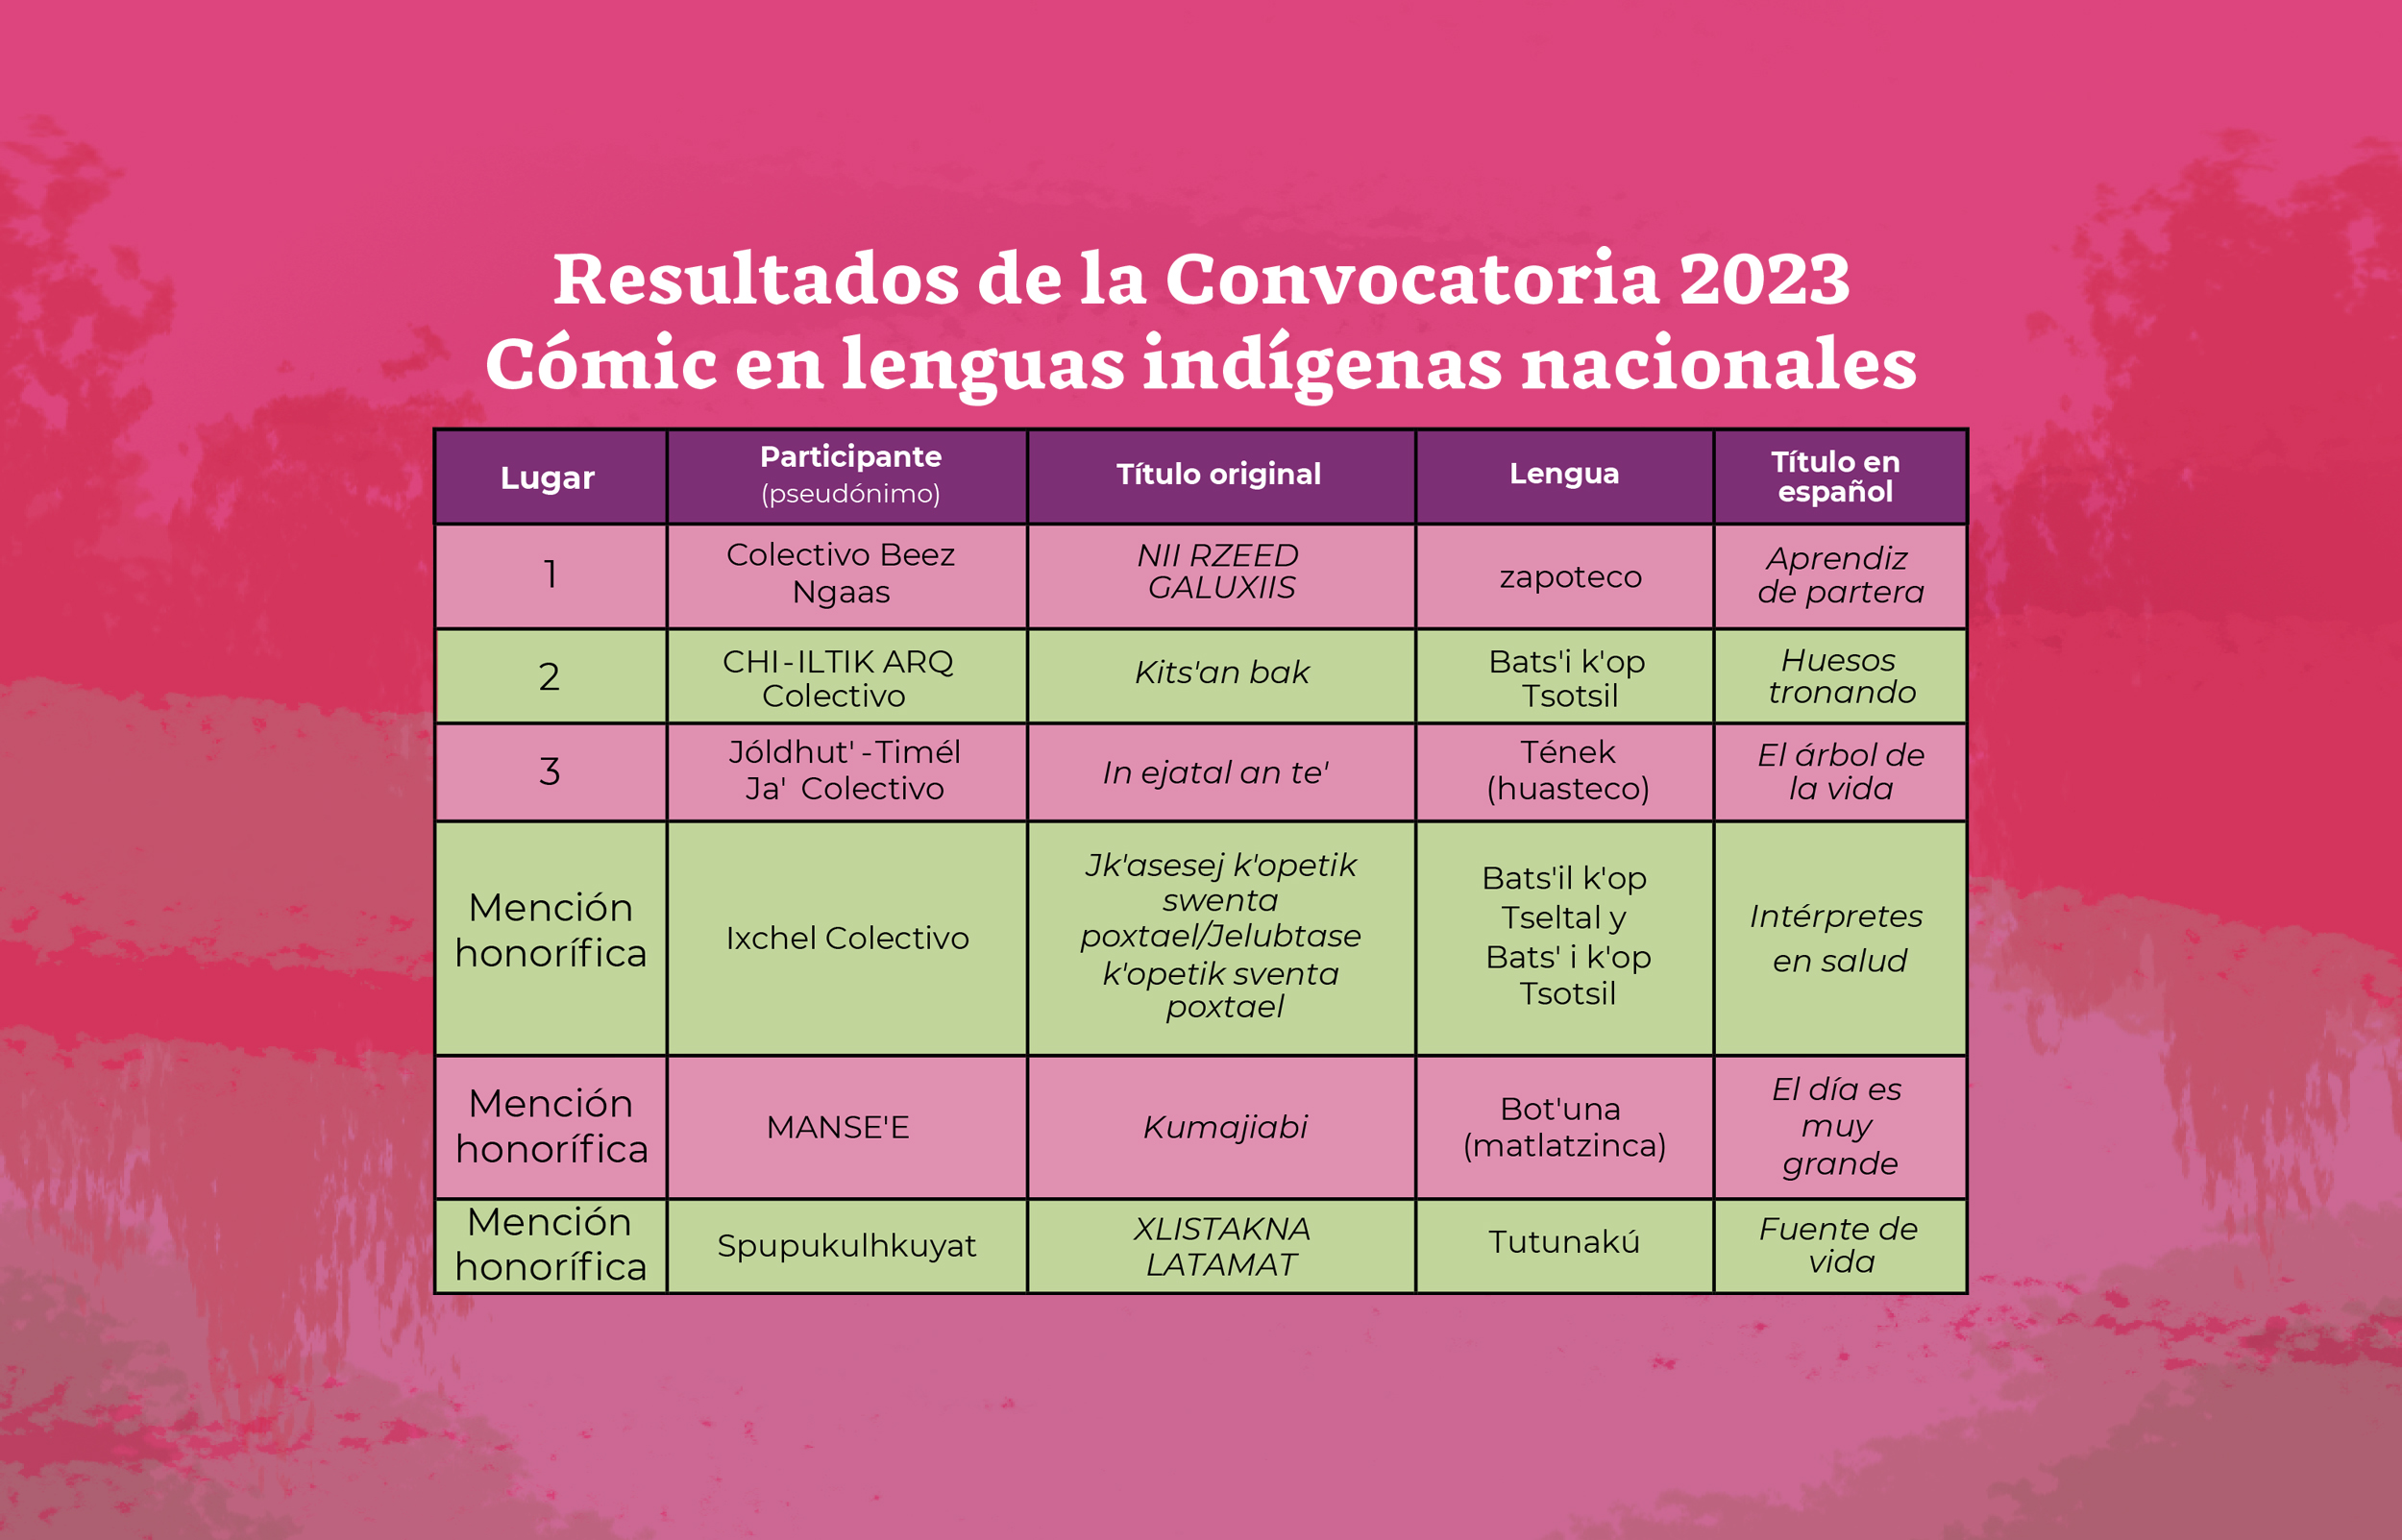 La Secretaría de Cultura, a través del Inali, informa los resultados de la Convocatoria 2023, Cómic en Lenguas Indígenas Nacionales